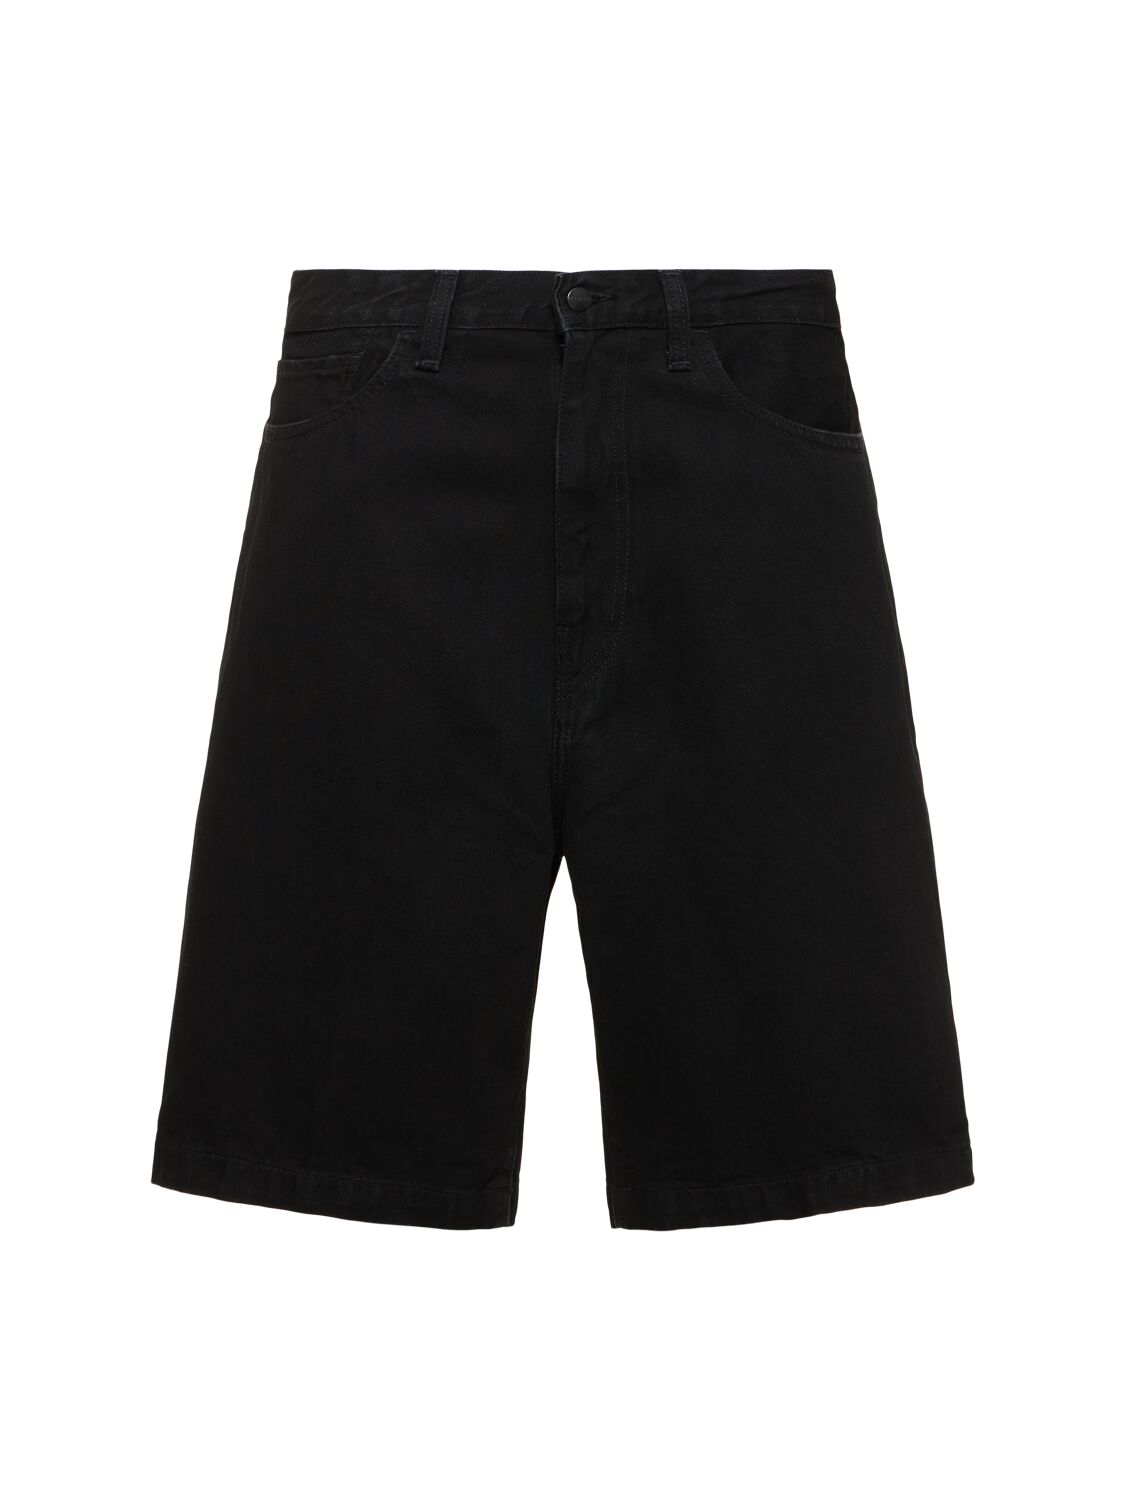 Carhartt Landon Shorts In Rinsed Black